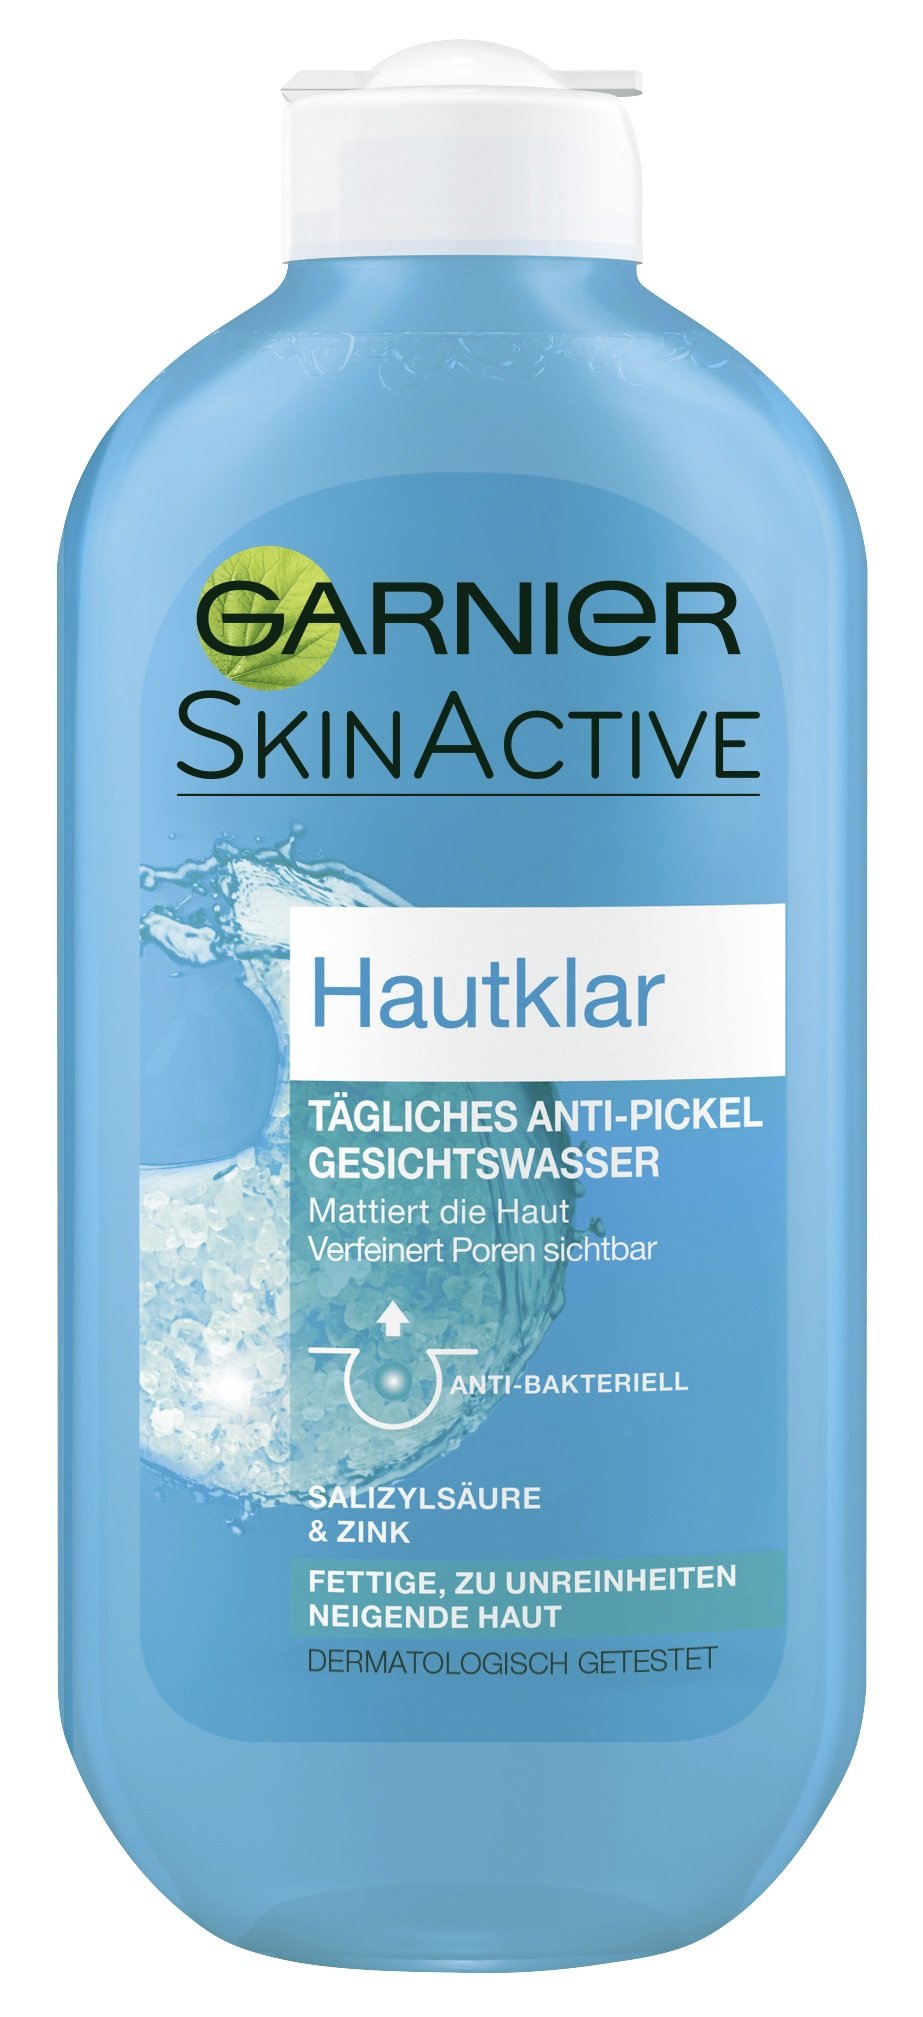 Garnier Gesichtswasser, 3-fach wirksam gegen Unreinheiten, Anti-Pickel, hautklärend, verfeinert die Poren, mattiert, Hautklar, 6er Pack (6 x 200 ml)